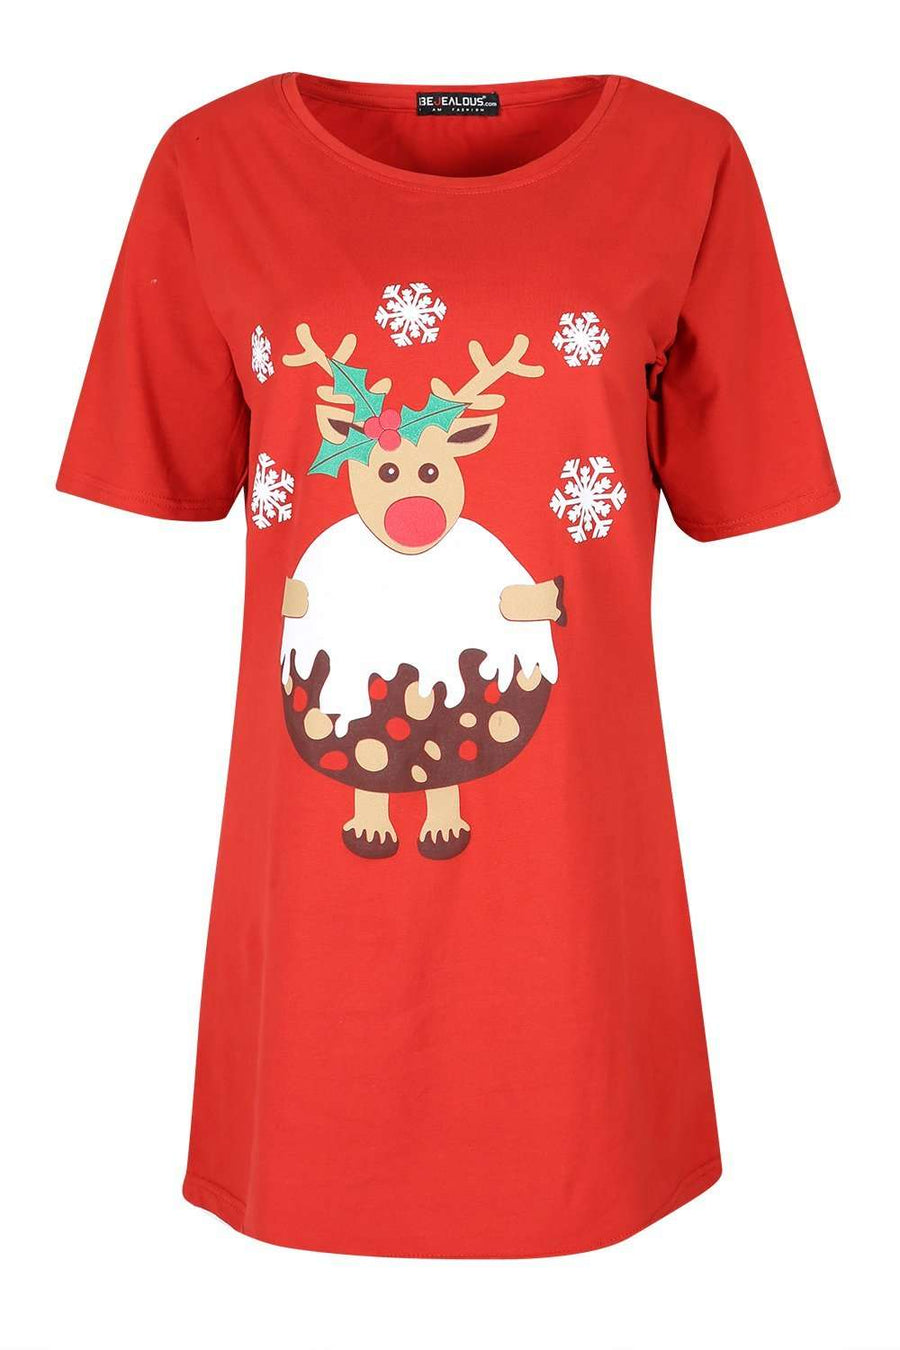 Reindeer Graphic Print Baggy Xmas T-shirt Dress - bejealous-com